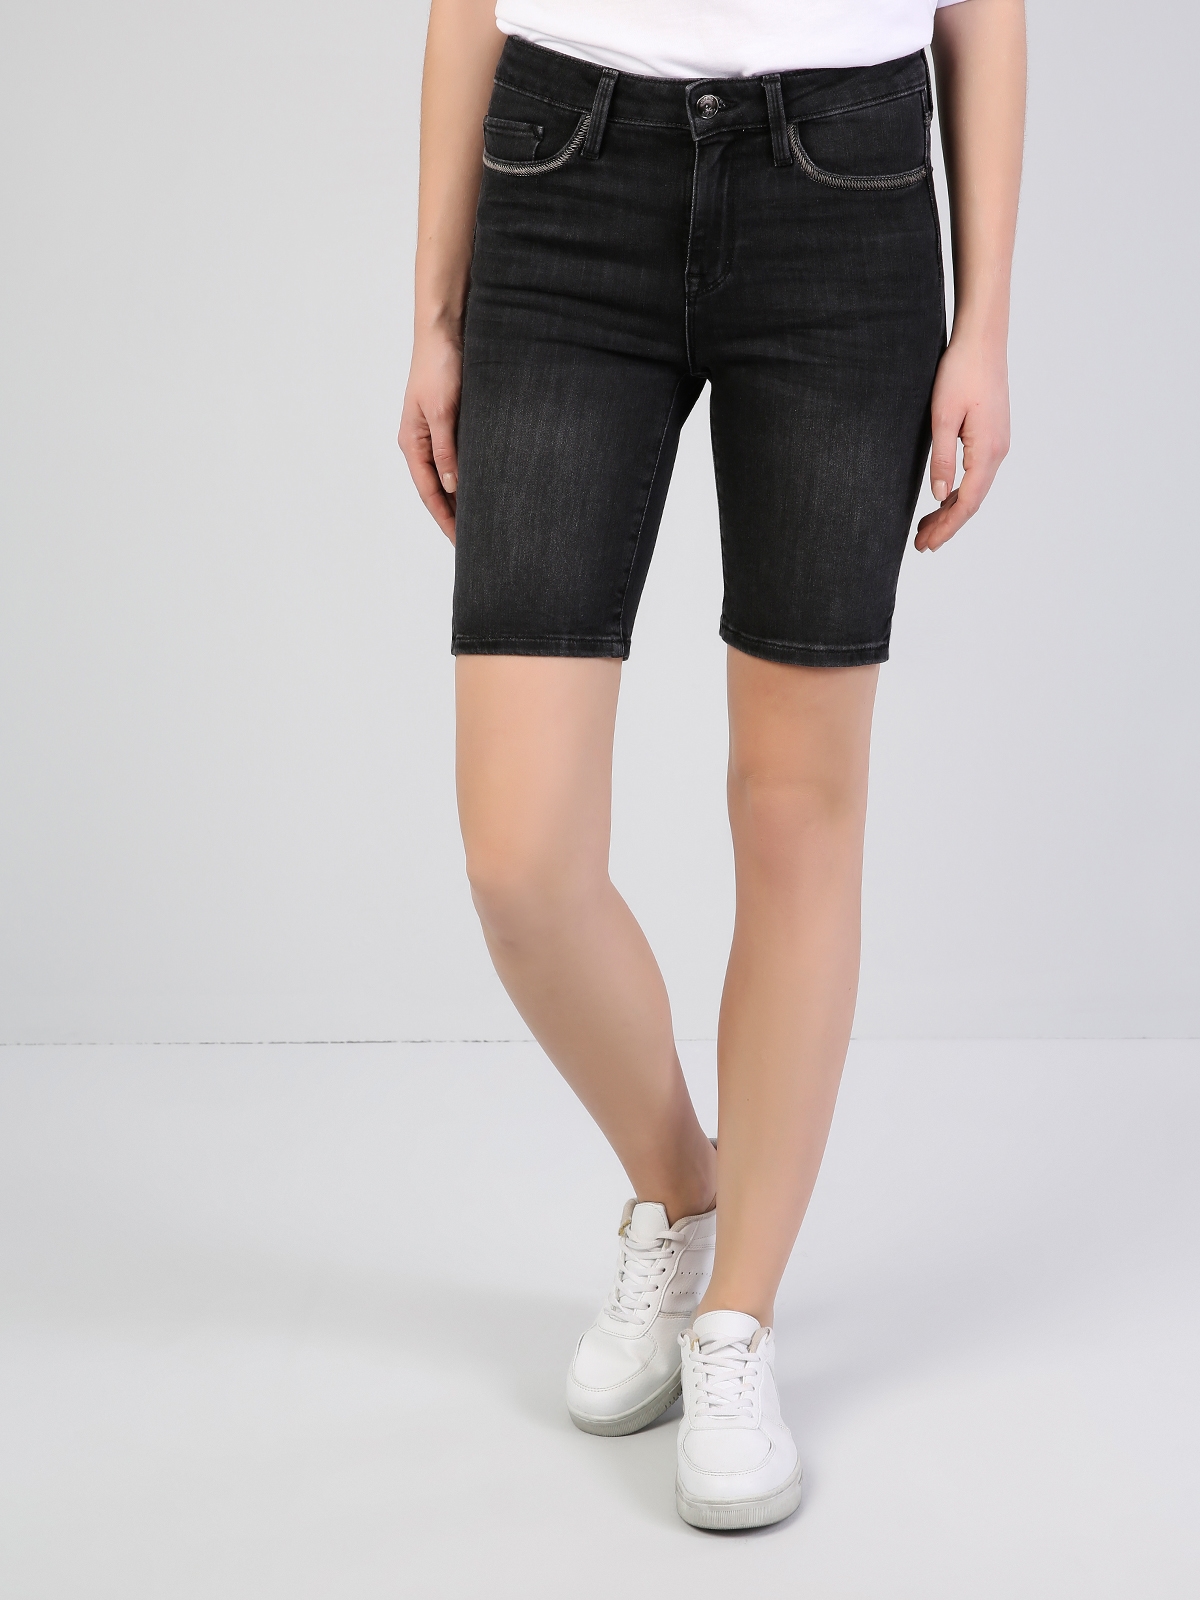 Afișați detalii pentru Short / Pantaloni Scurti De Dama Negru Super Slim Fit 